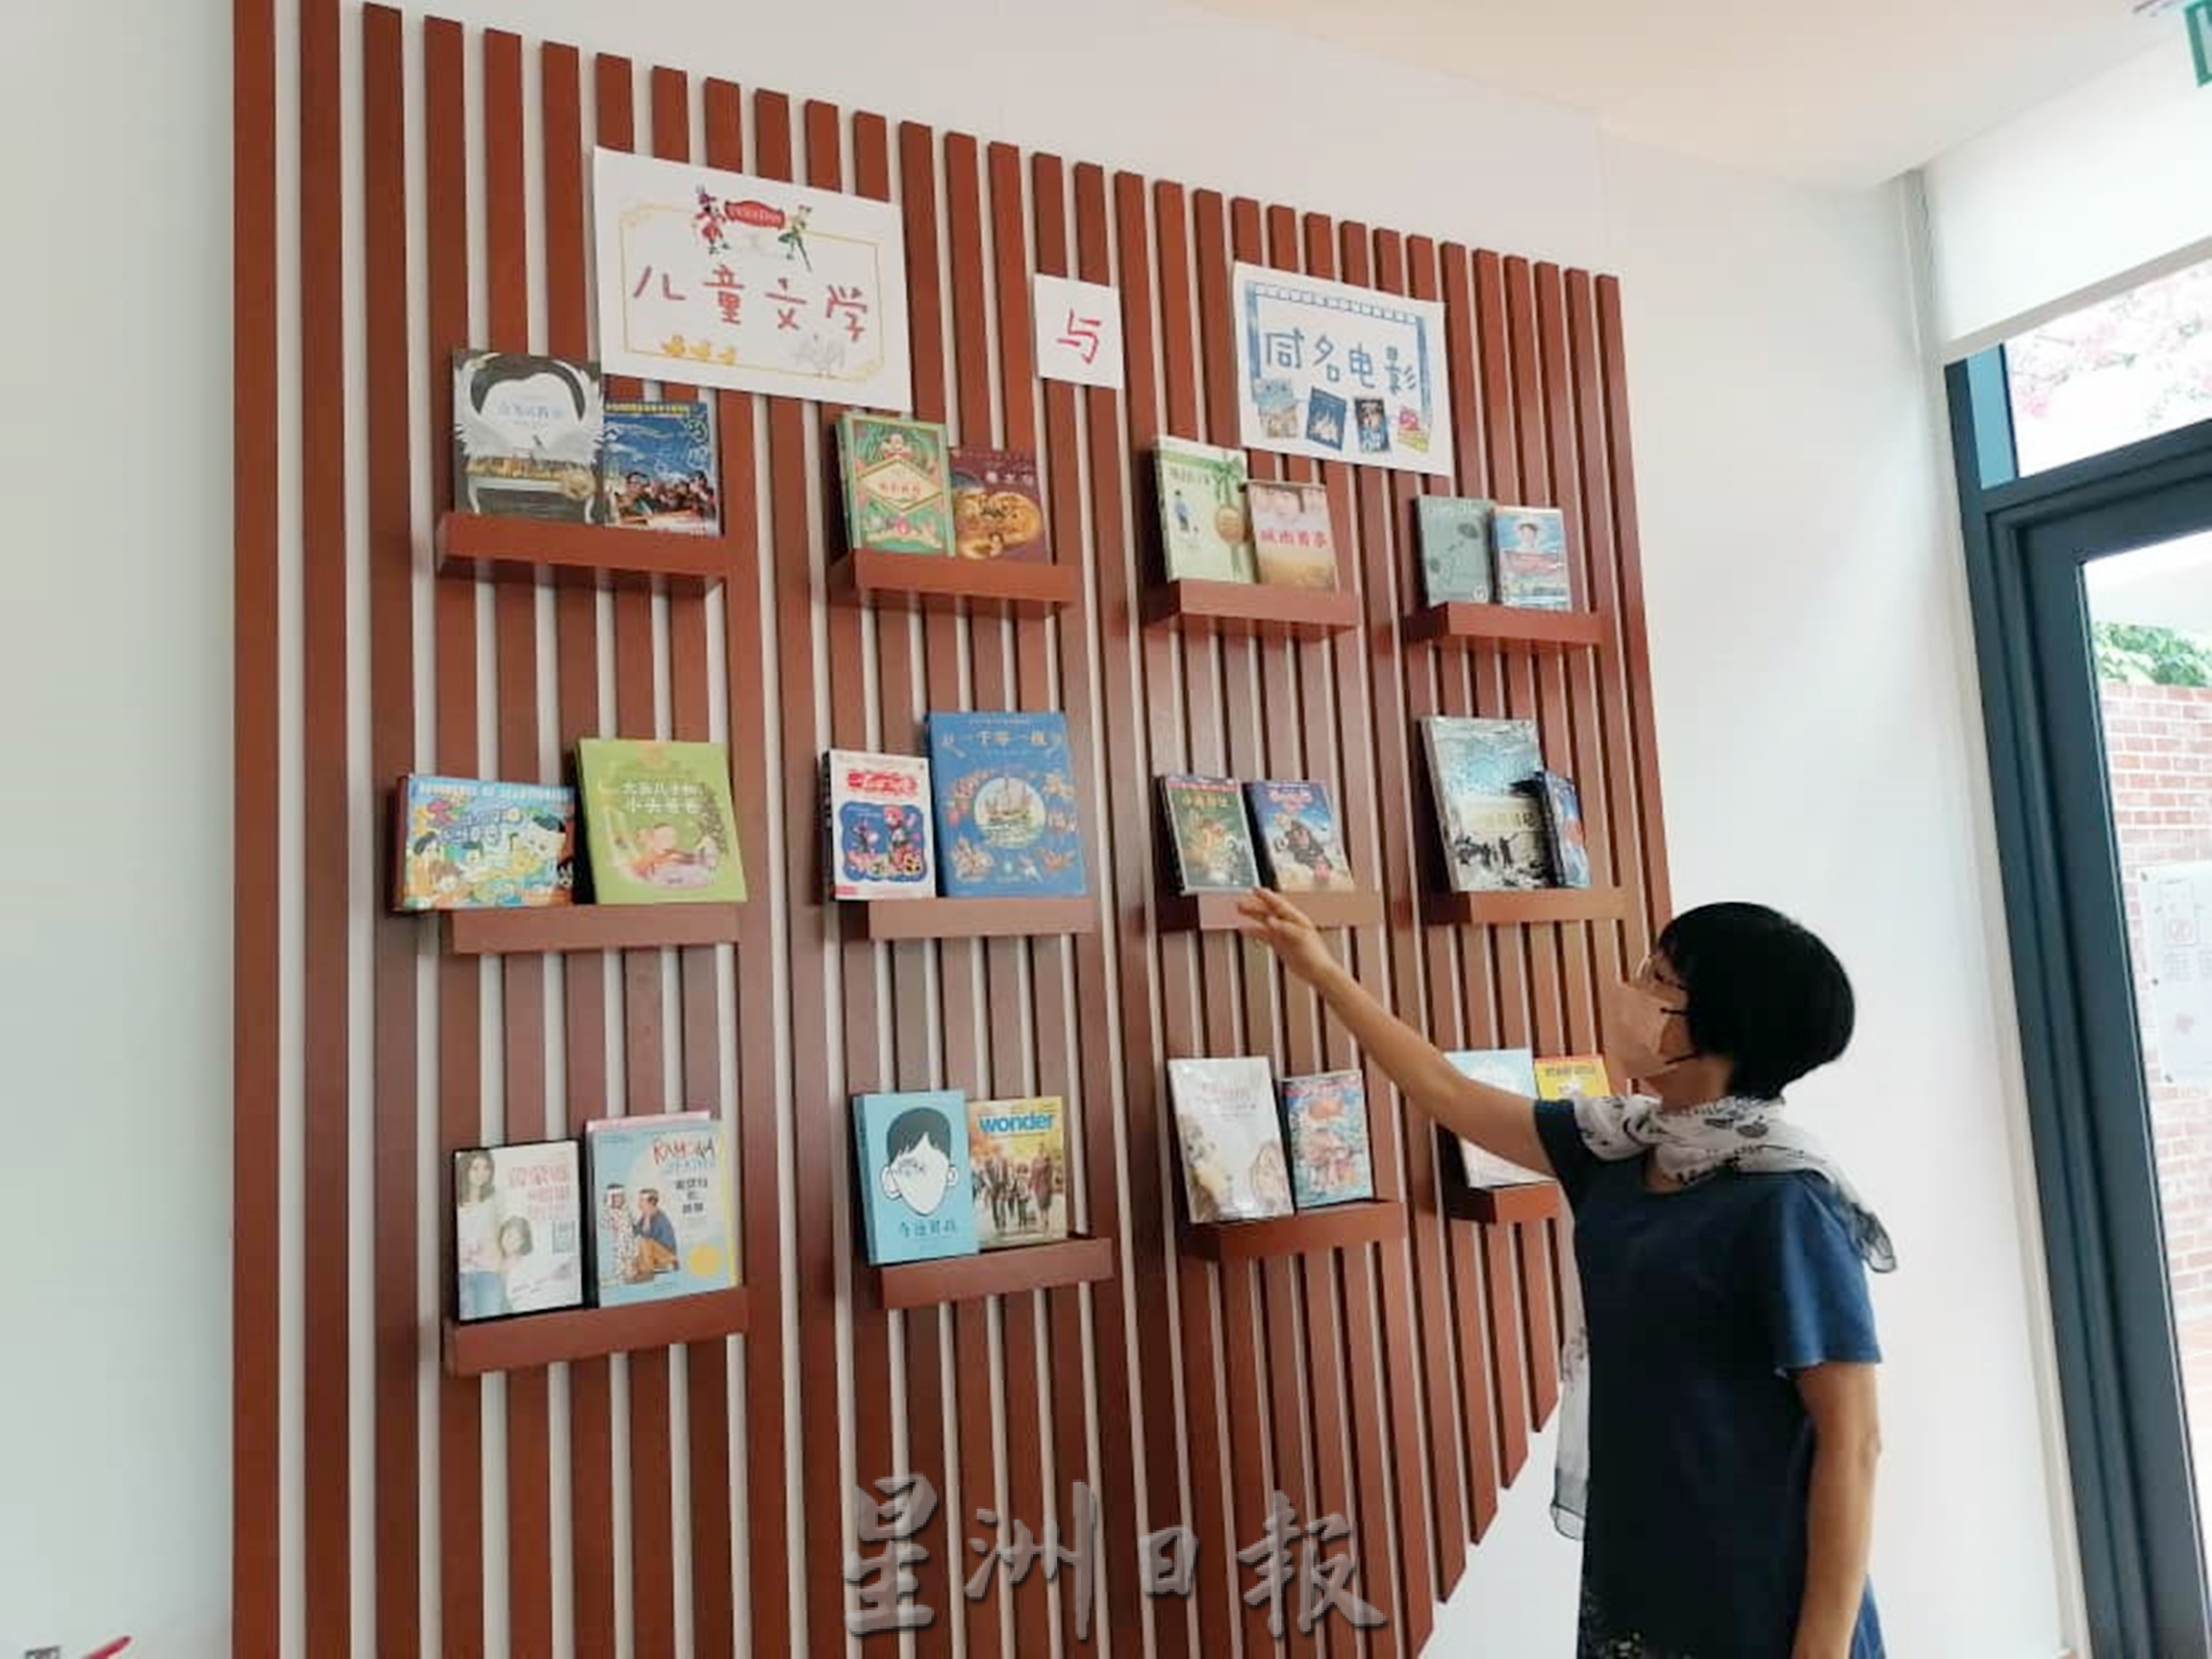 东：《东游记》“彭佛教会儿童图书馆，鼓励亲子同享阅读乐趣。”